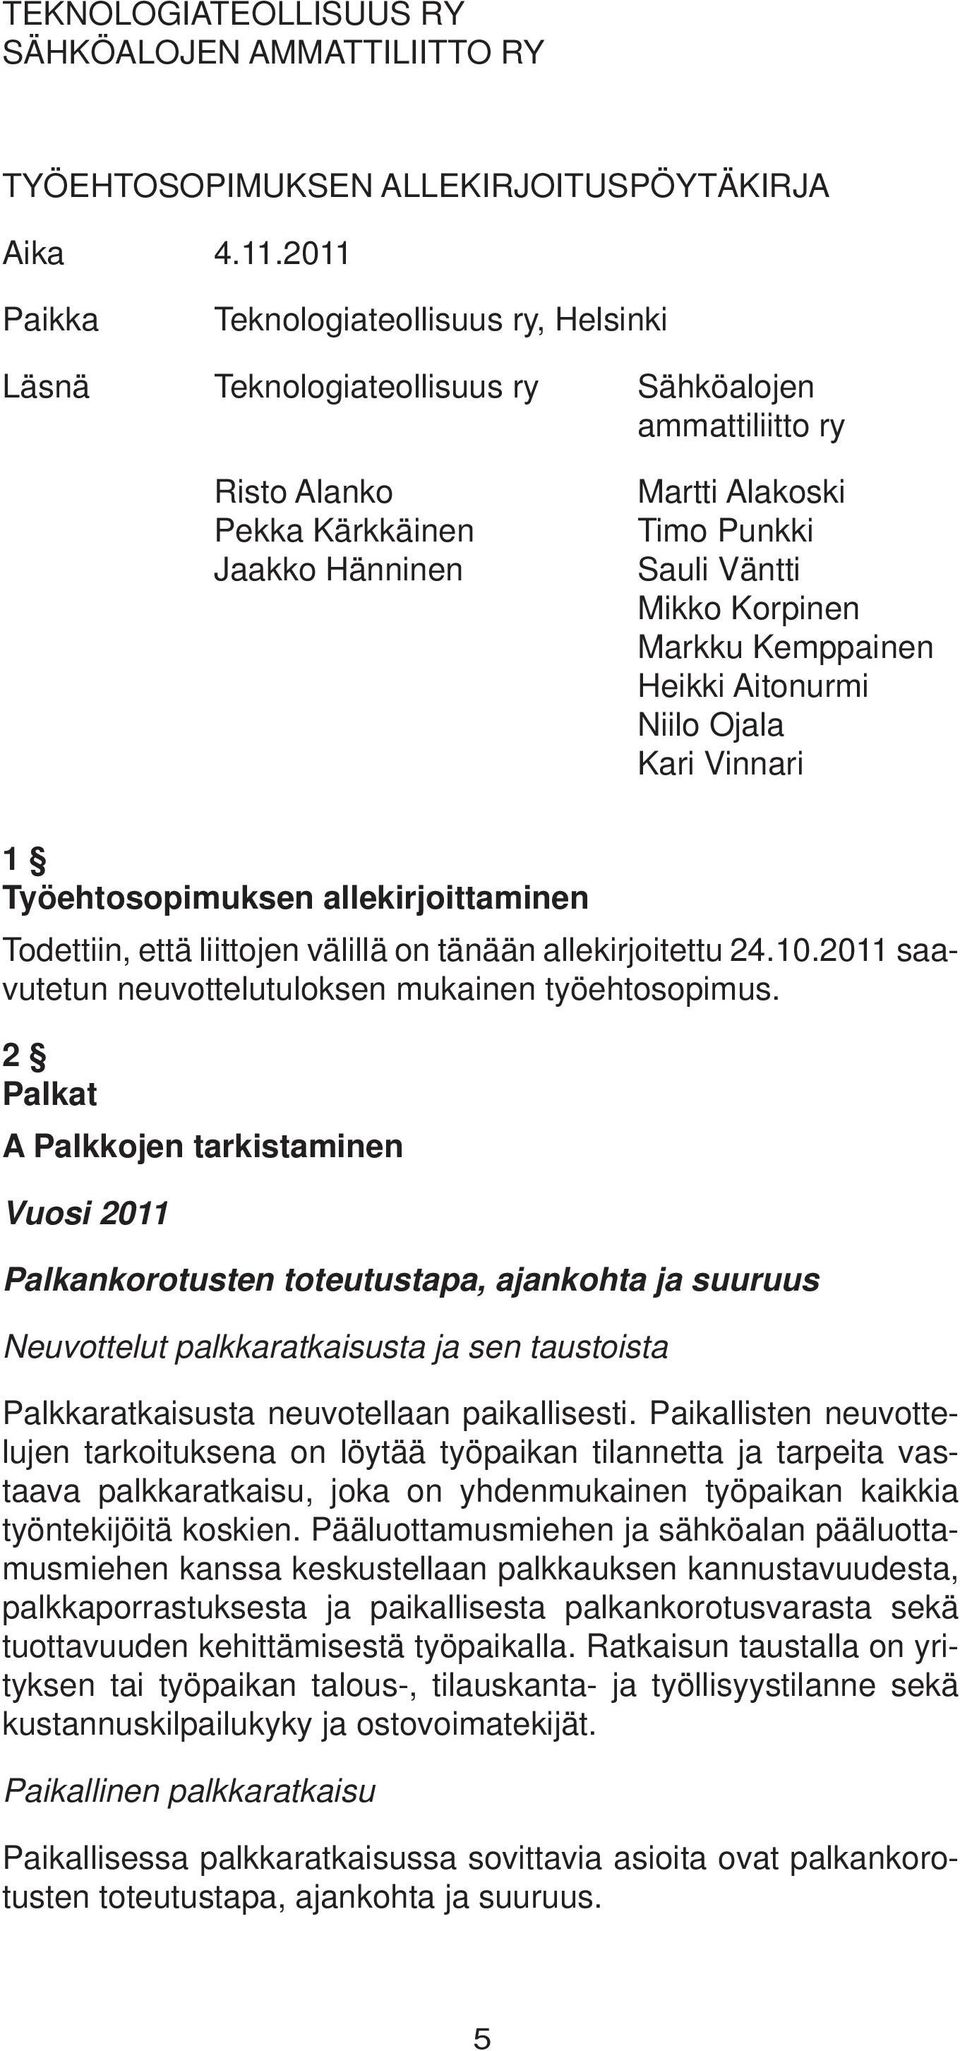 Korpinen Markku Kemppainen Heikki Aitonurmi Niilo Ojala Kari Vinnari 1 Työehtosopimuksen allekirjoittaminen Todettiin, että liittojen välillä on tänään allekirjoitettu 24.10.